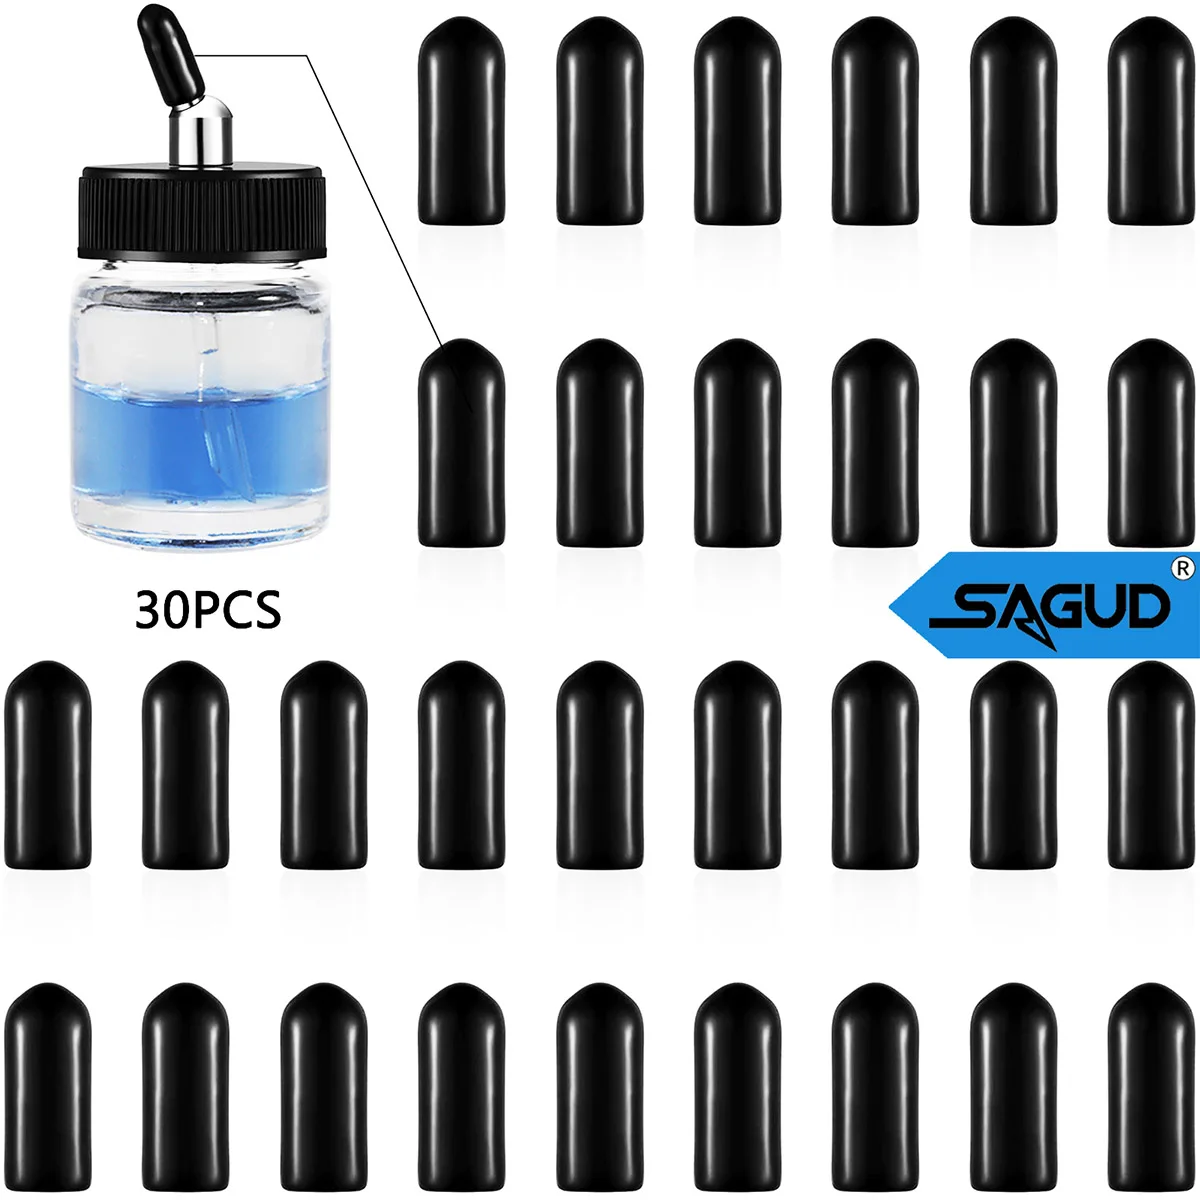 

30 Pcs/Bag Black Airbrush Bottles Caps Airbrush Jar Caps Pour Covers Siphon Adapter Liquor Spout Covers for Airbrush Bottle Jar